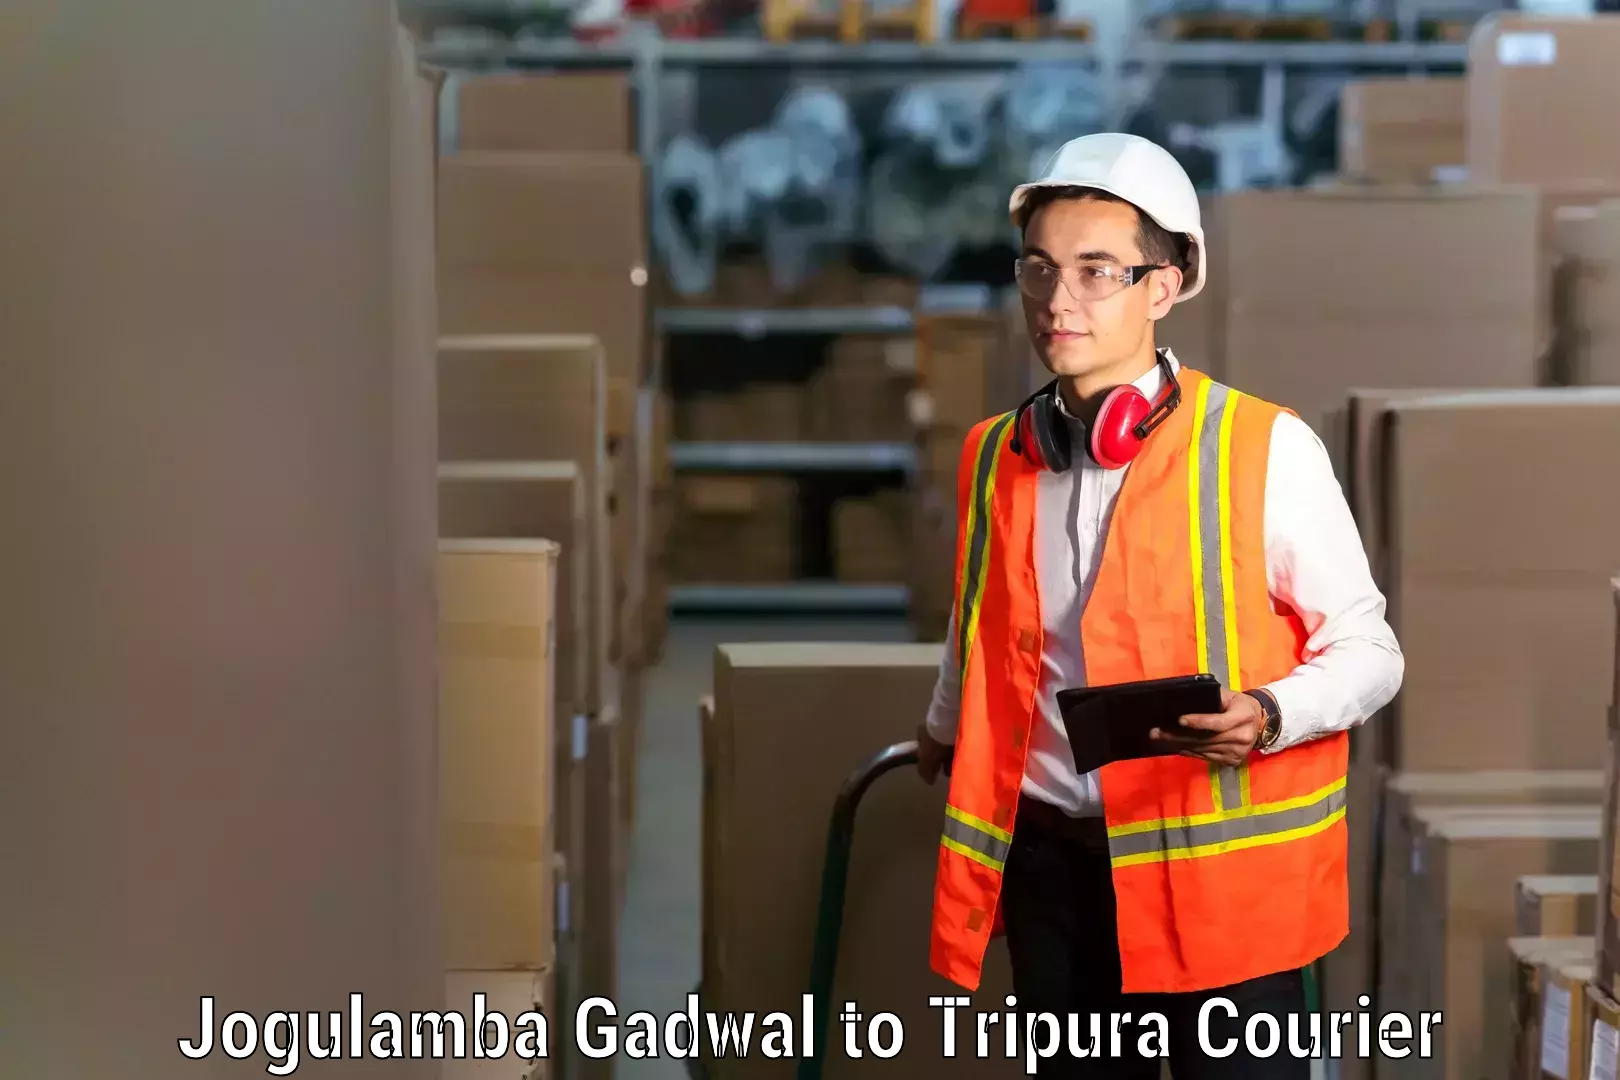 Nationwide furniture movers Jogulamba Gadwal to North Tripura